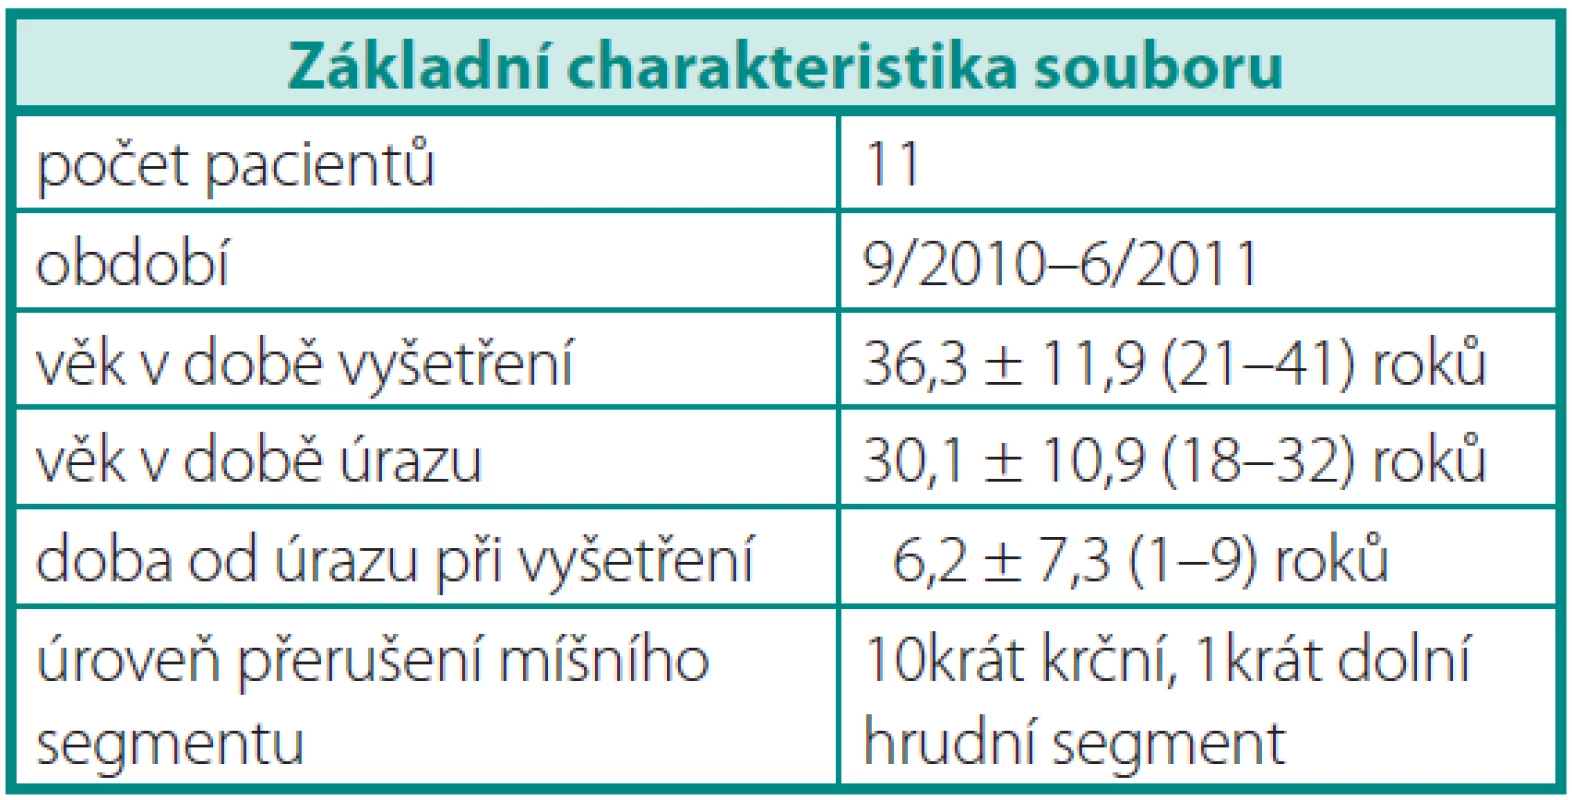 Základní charakteristika souboru
Table 1. Baseline characteristic of the set